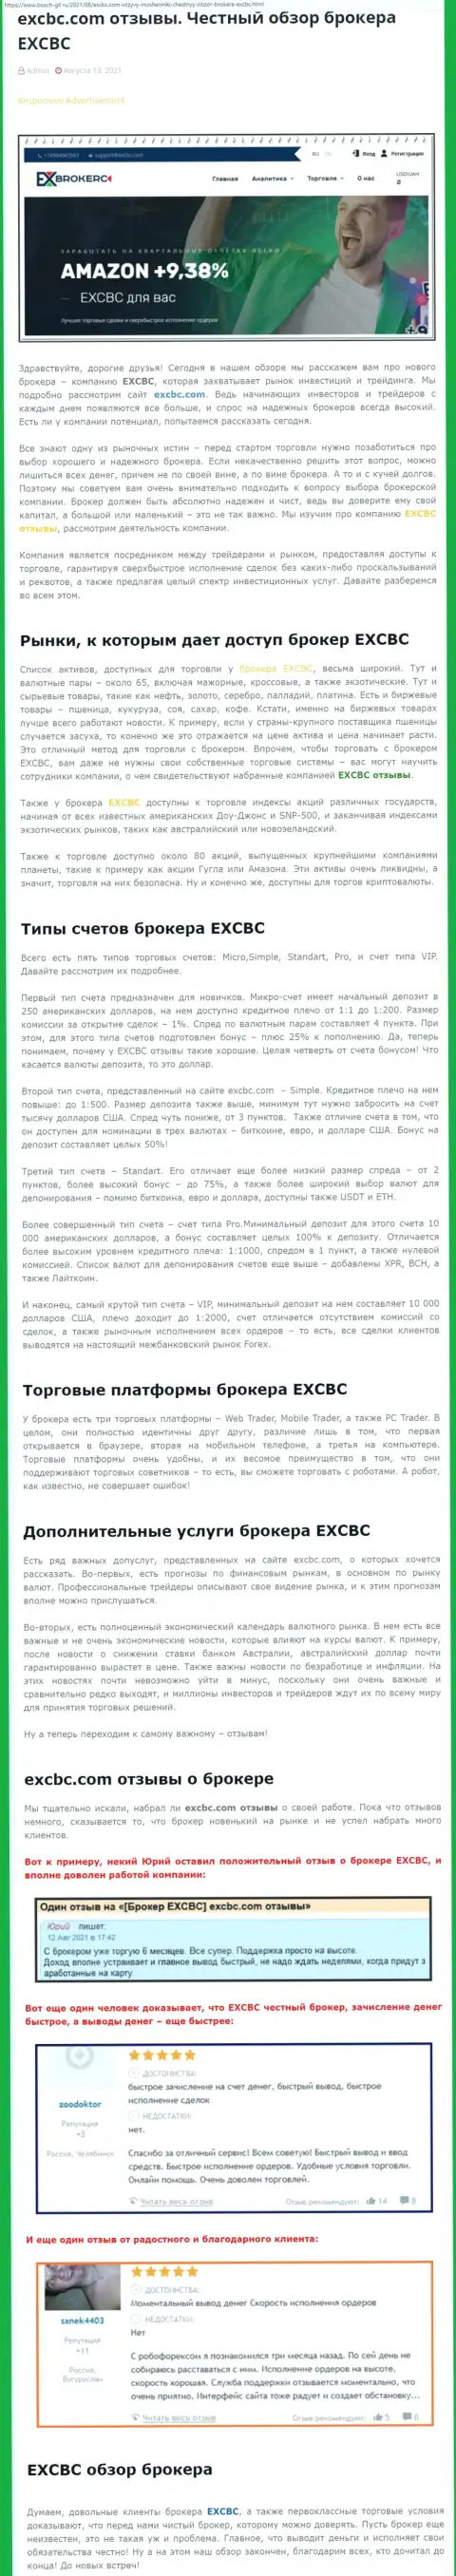 Обзорный материал об форекс-компании ЕИксБрокерс на информационном портале Bosch Gll Ru